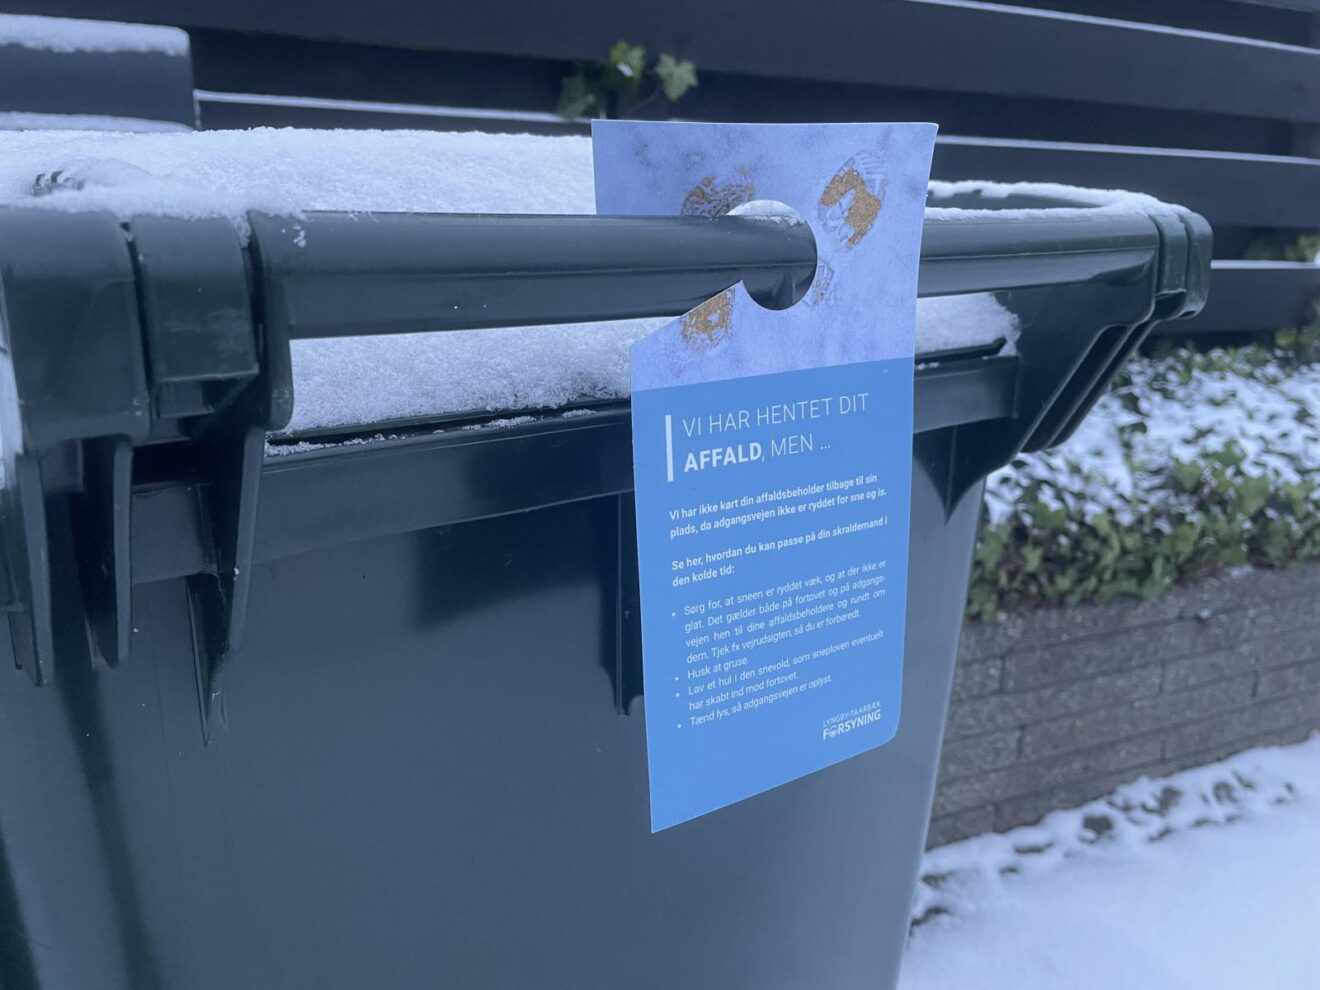 Sne, frost og affaldsindsamling